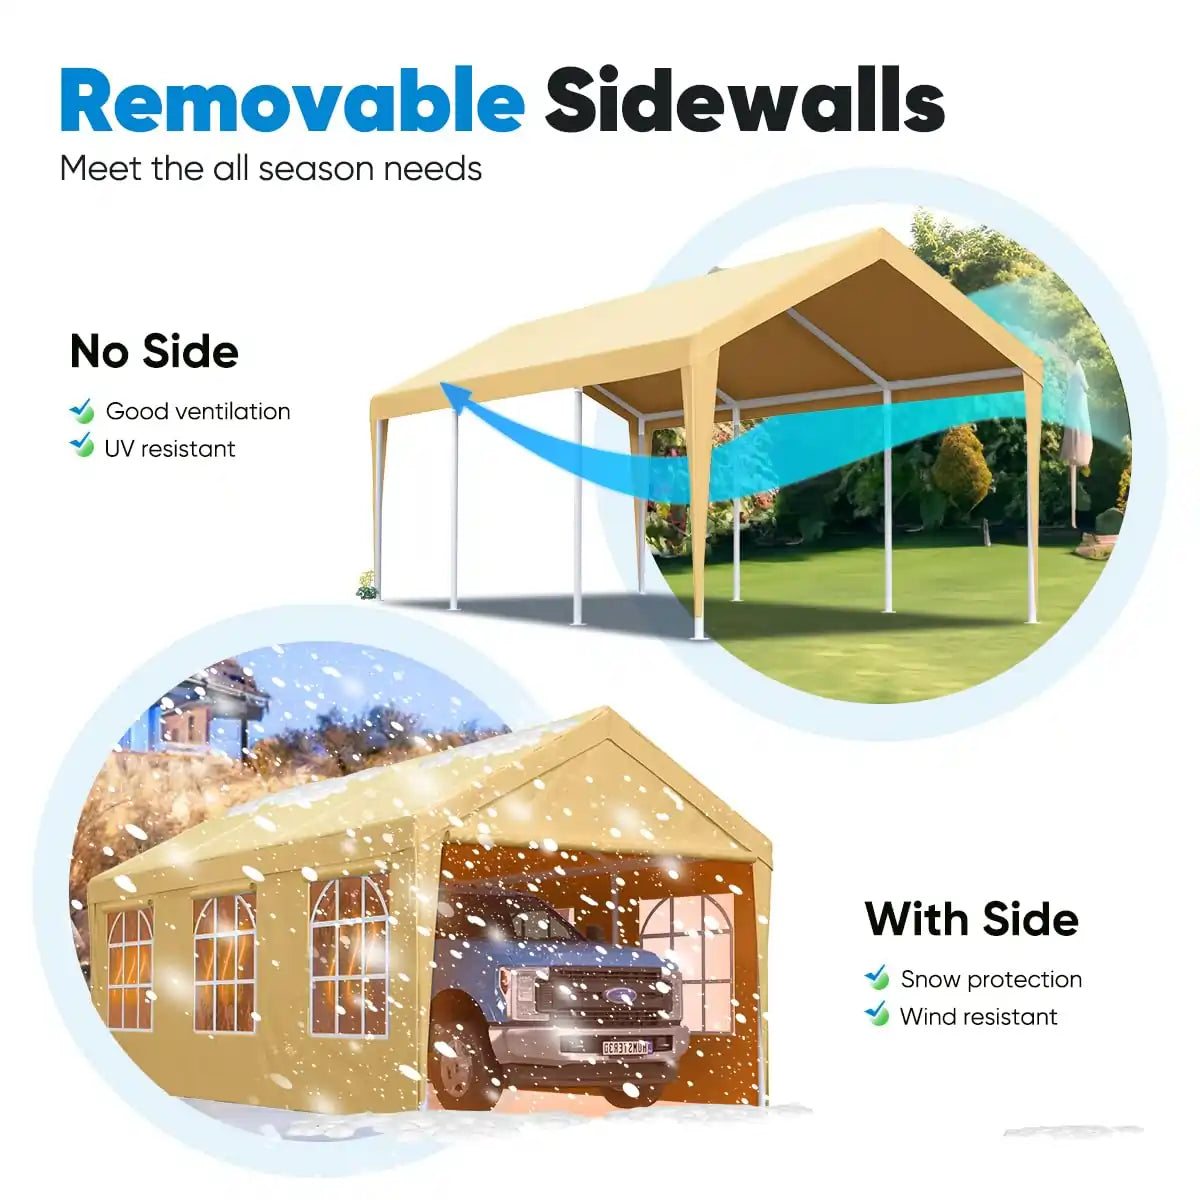 Removable sidewalls#color_beige